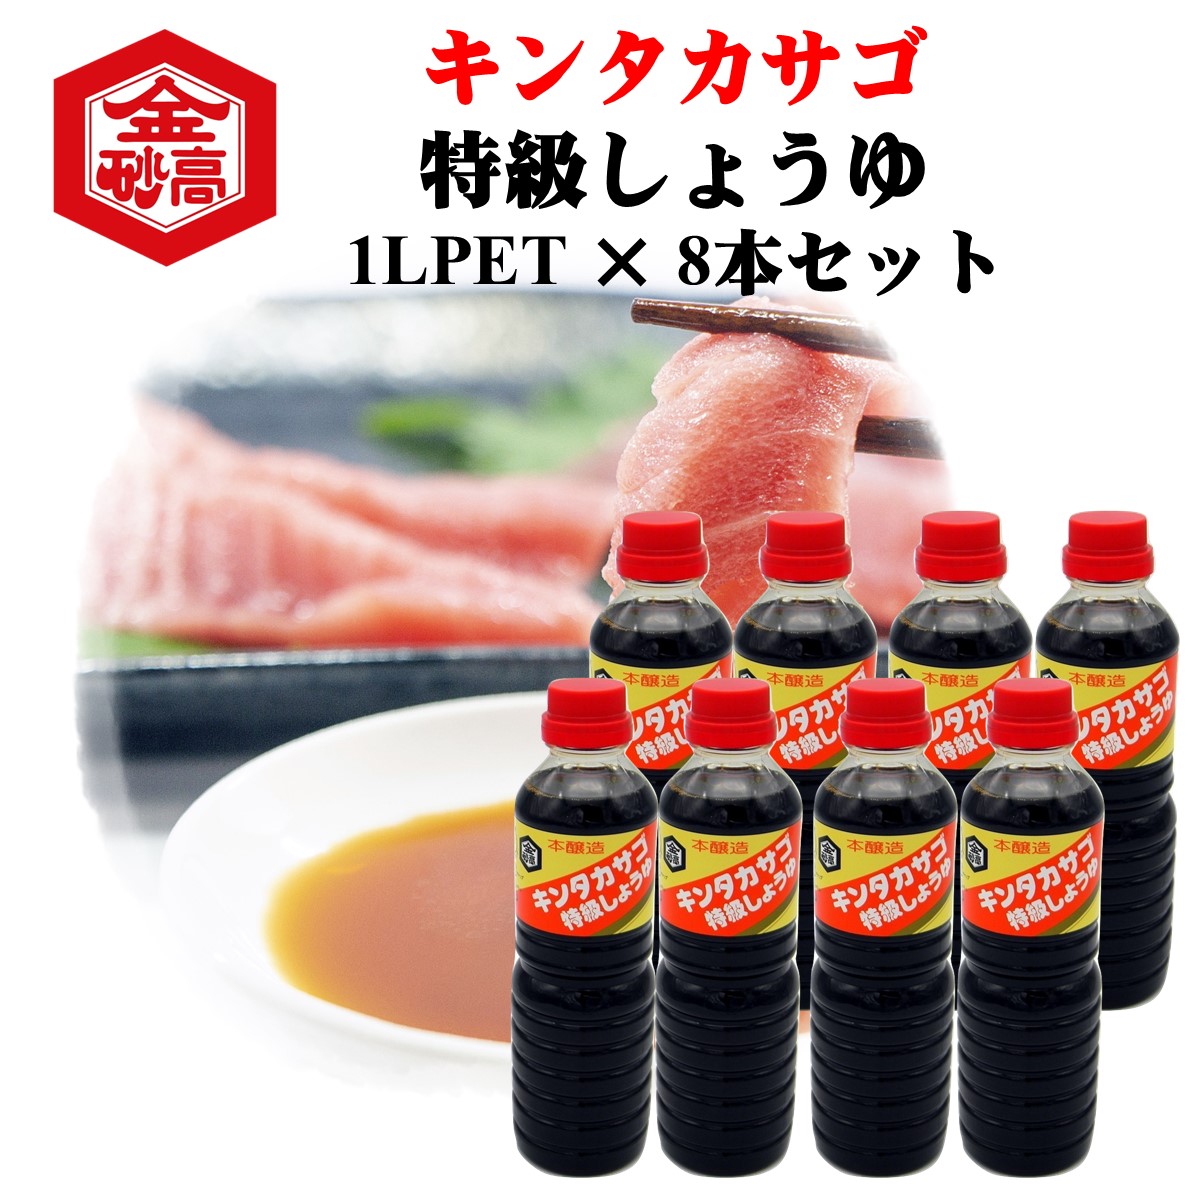 会津高砂屋 キンタカサゴ 特級しょうゆ ペットボトル 1L×8本 濃口醤油の商品画像